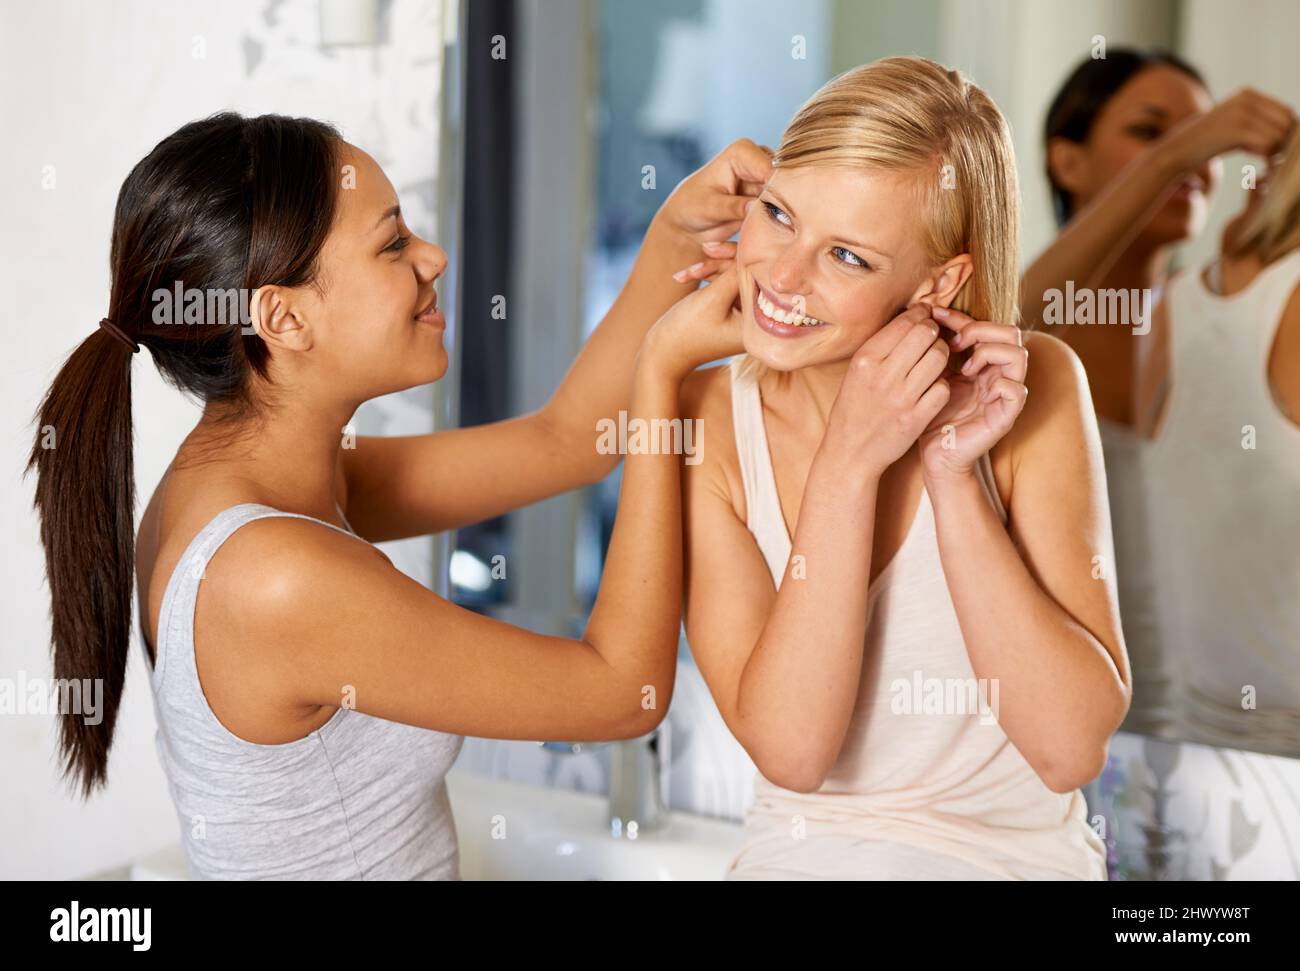 Ein paar Funkeln aufsetzen. Aufnahme einer jungen Frau, die ihrem Freund hilft, ihre Ohrringe einzuhängen. Stockfoto